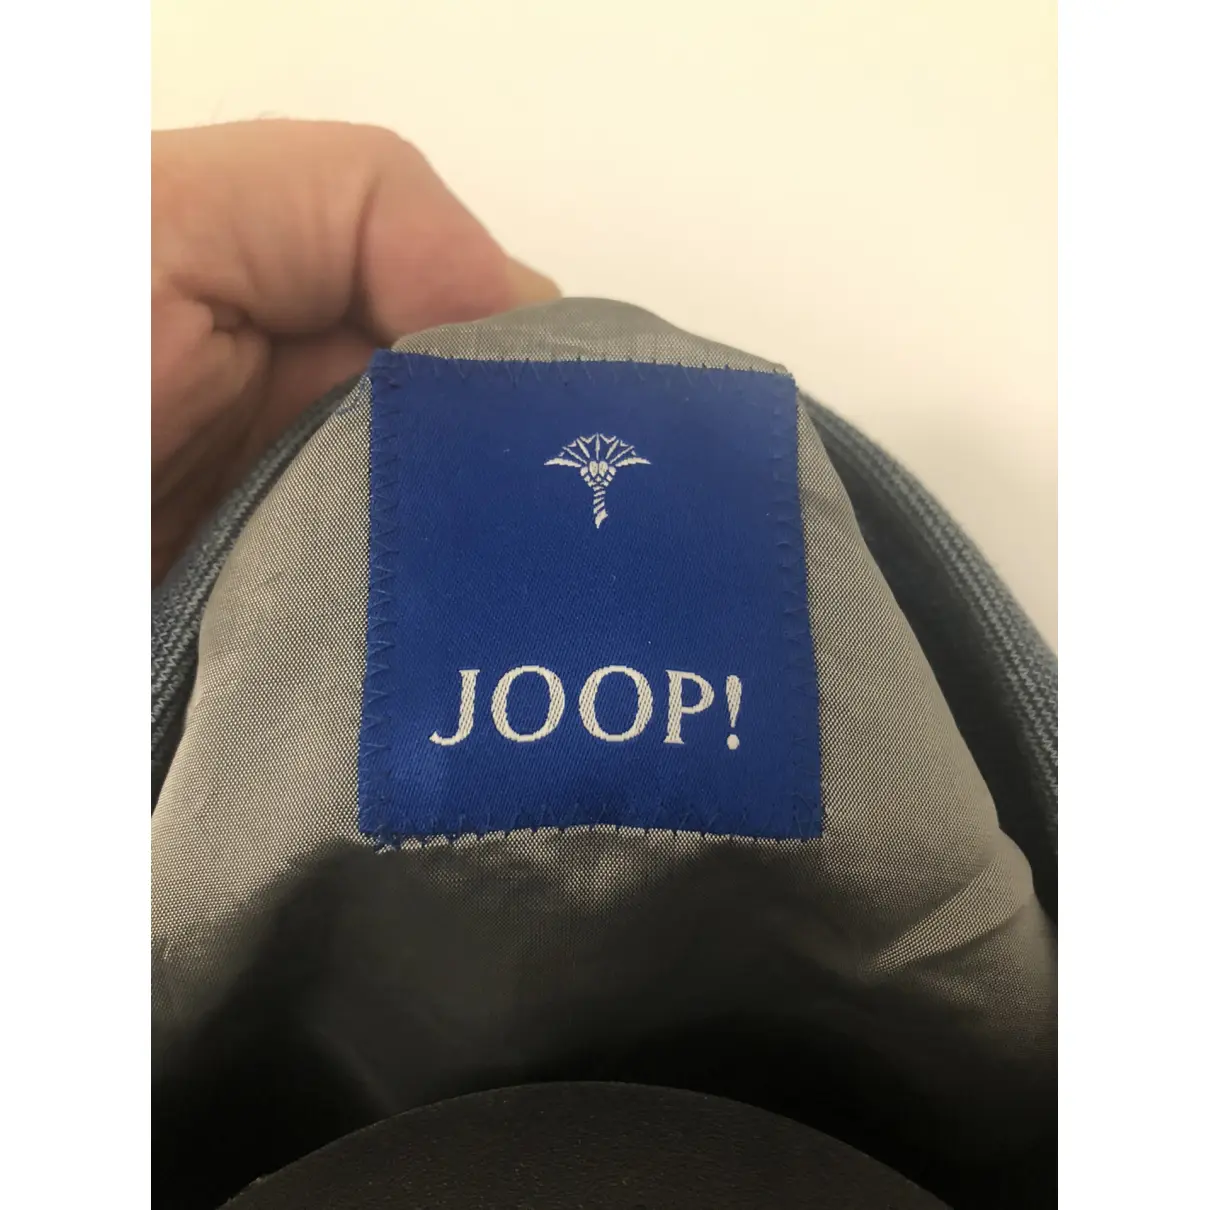 Buy Jette Joop Jacket online